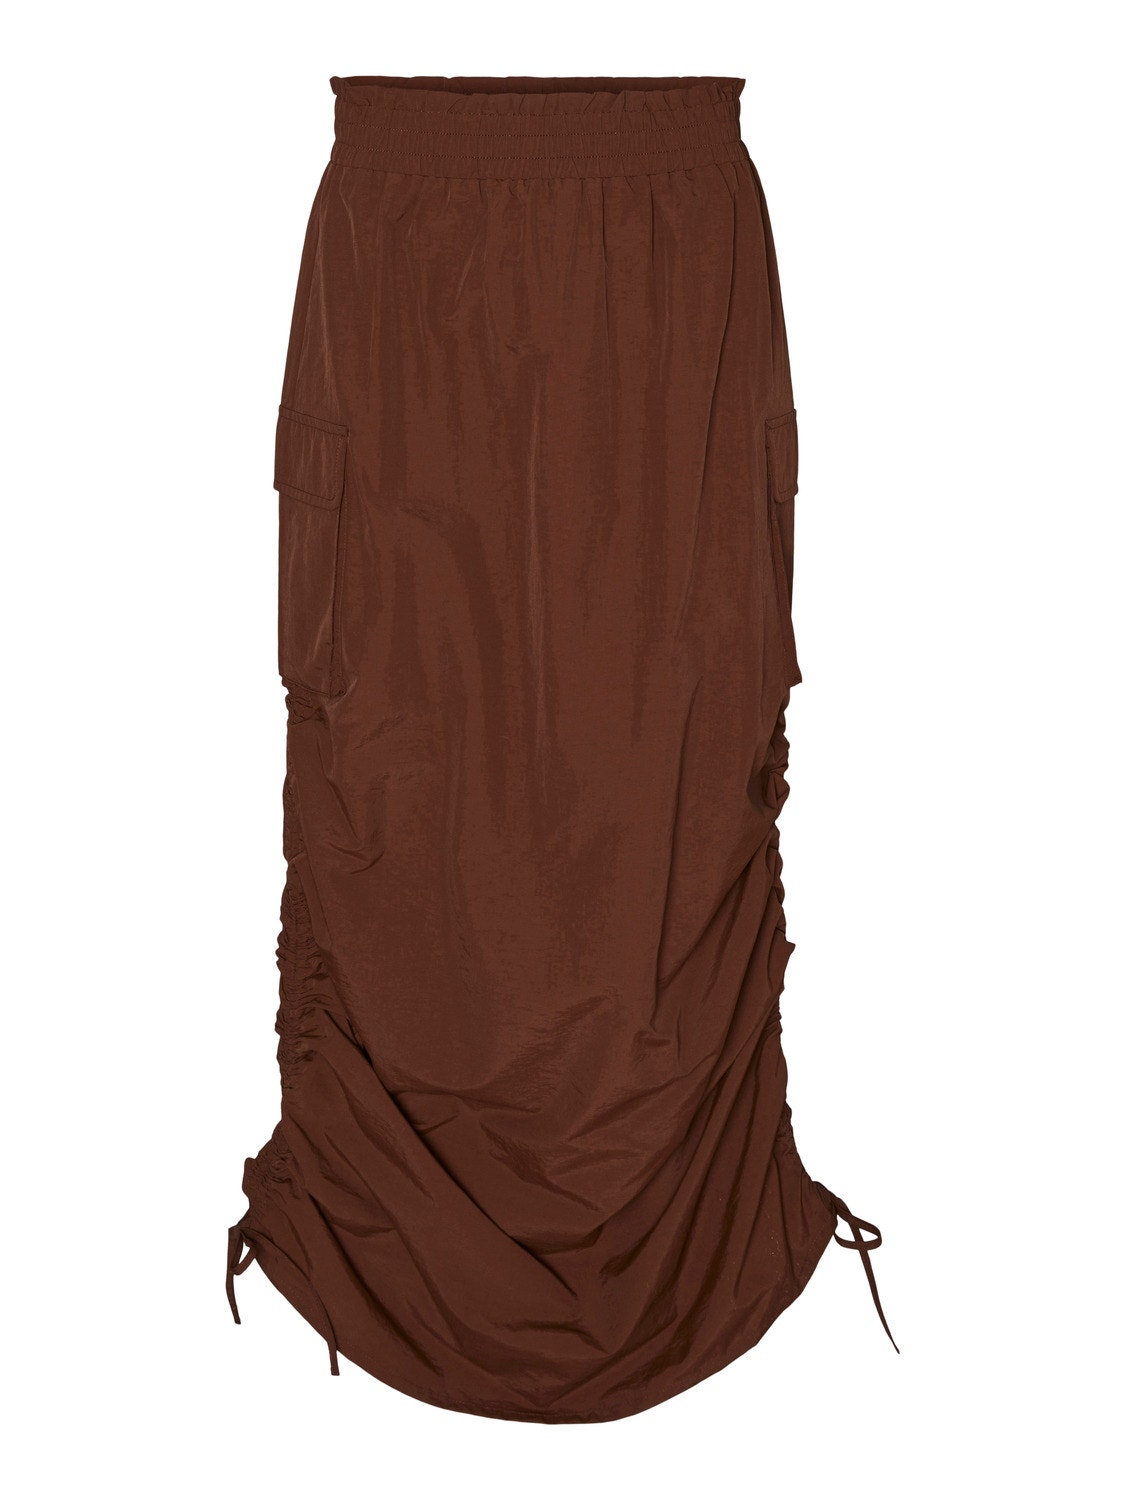 Vero Moda SOMETHINGNEW X GORPCORE Long Skirt -Tortoise Shell - 10301801